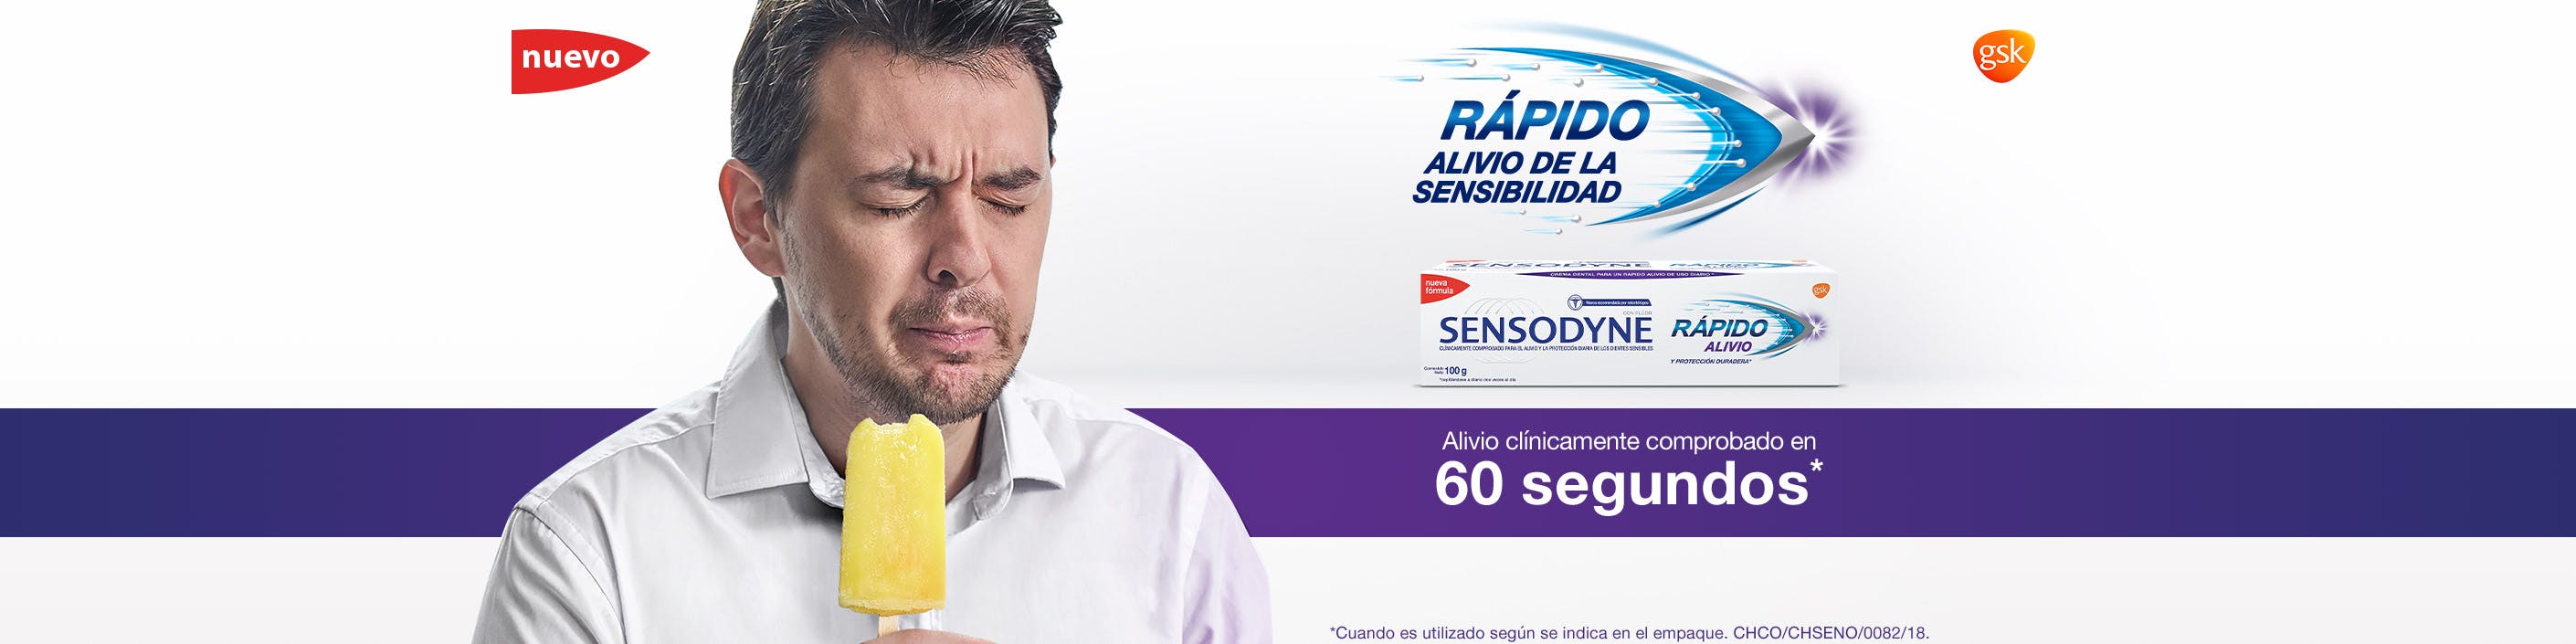 Sensodyne - Rápido Alivio de la sensibilidad - Alivio clinicamente comprobado en 60 segundos